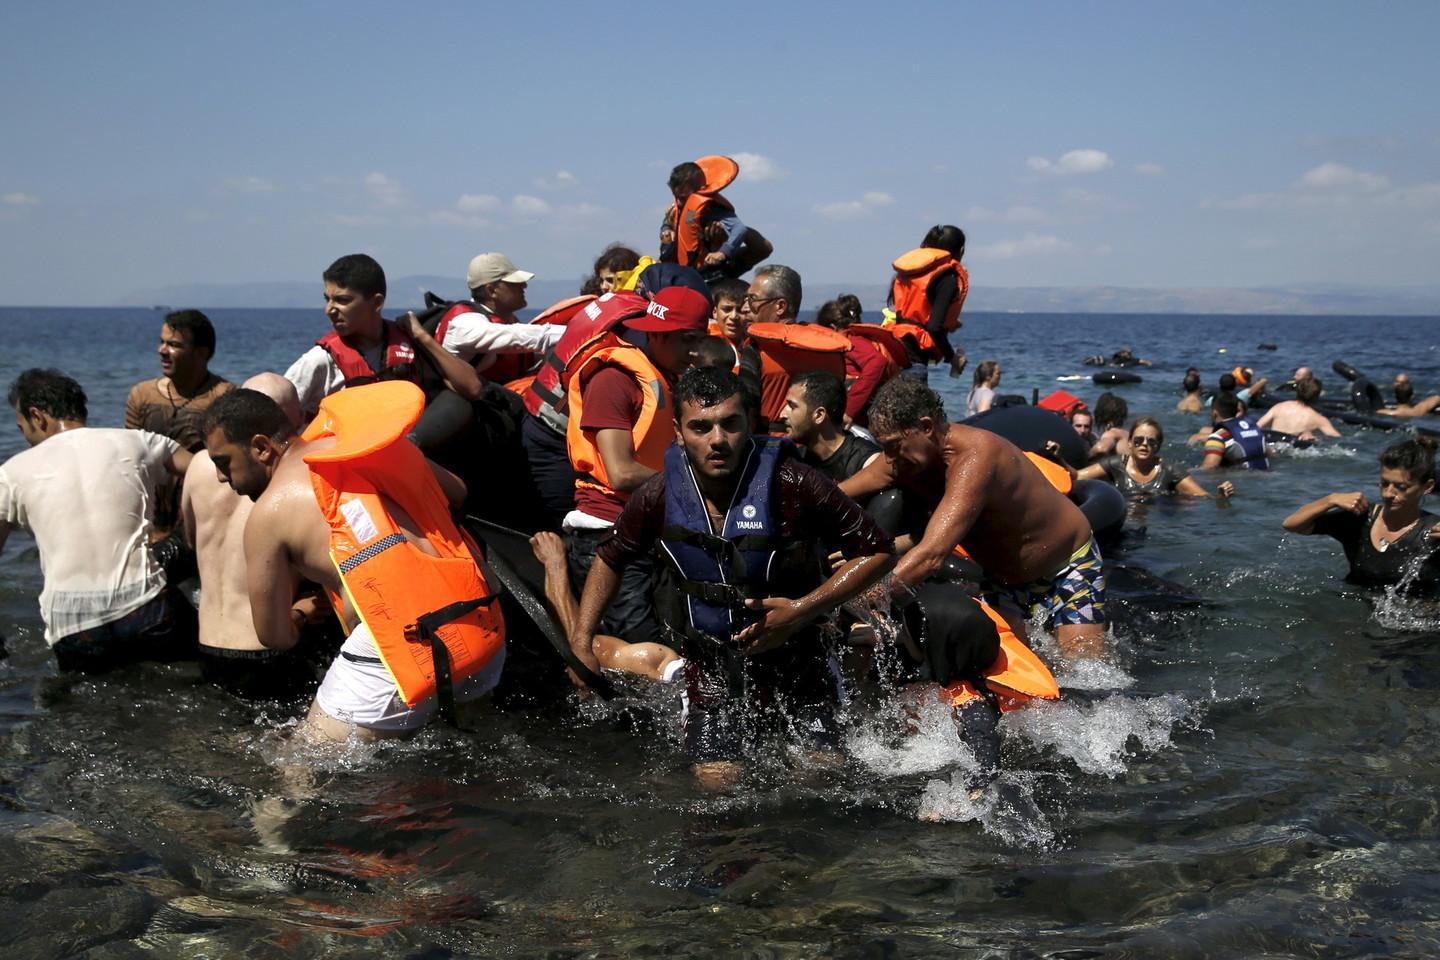 ES pirmadienį patvirtino planus imtis karinių veiksmų prieš žmonių kontrabandininkus Viduržemio jūroje.<br>Reuters/Scanpix nuotr.